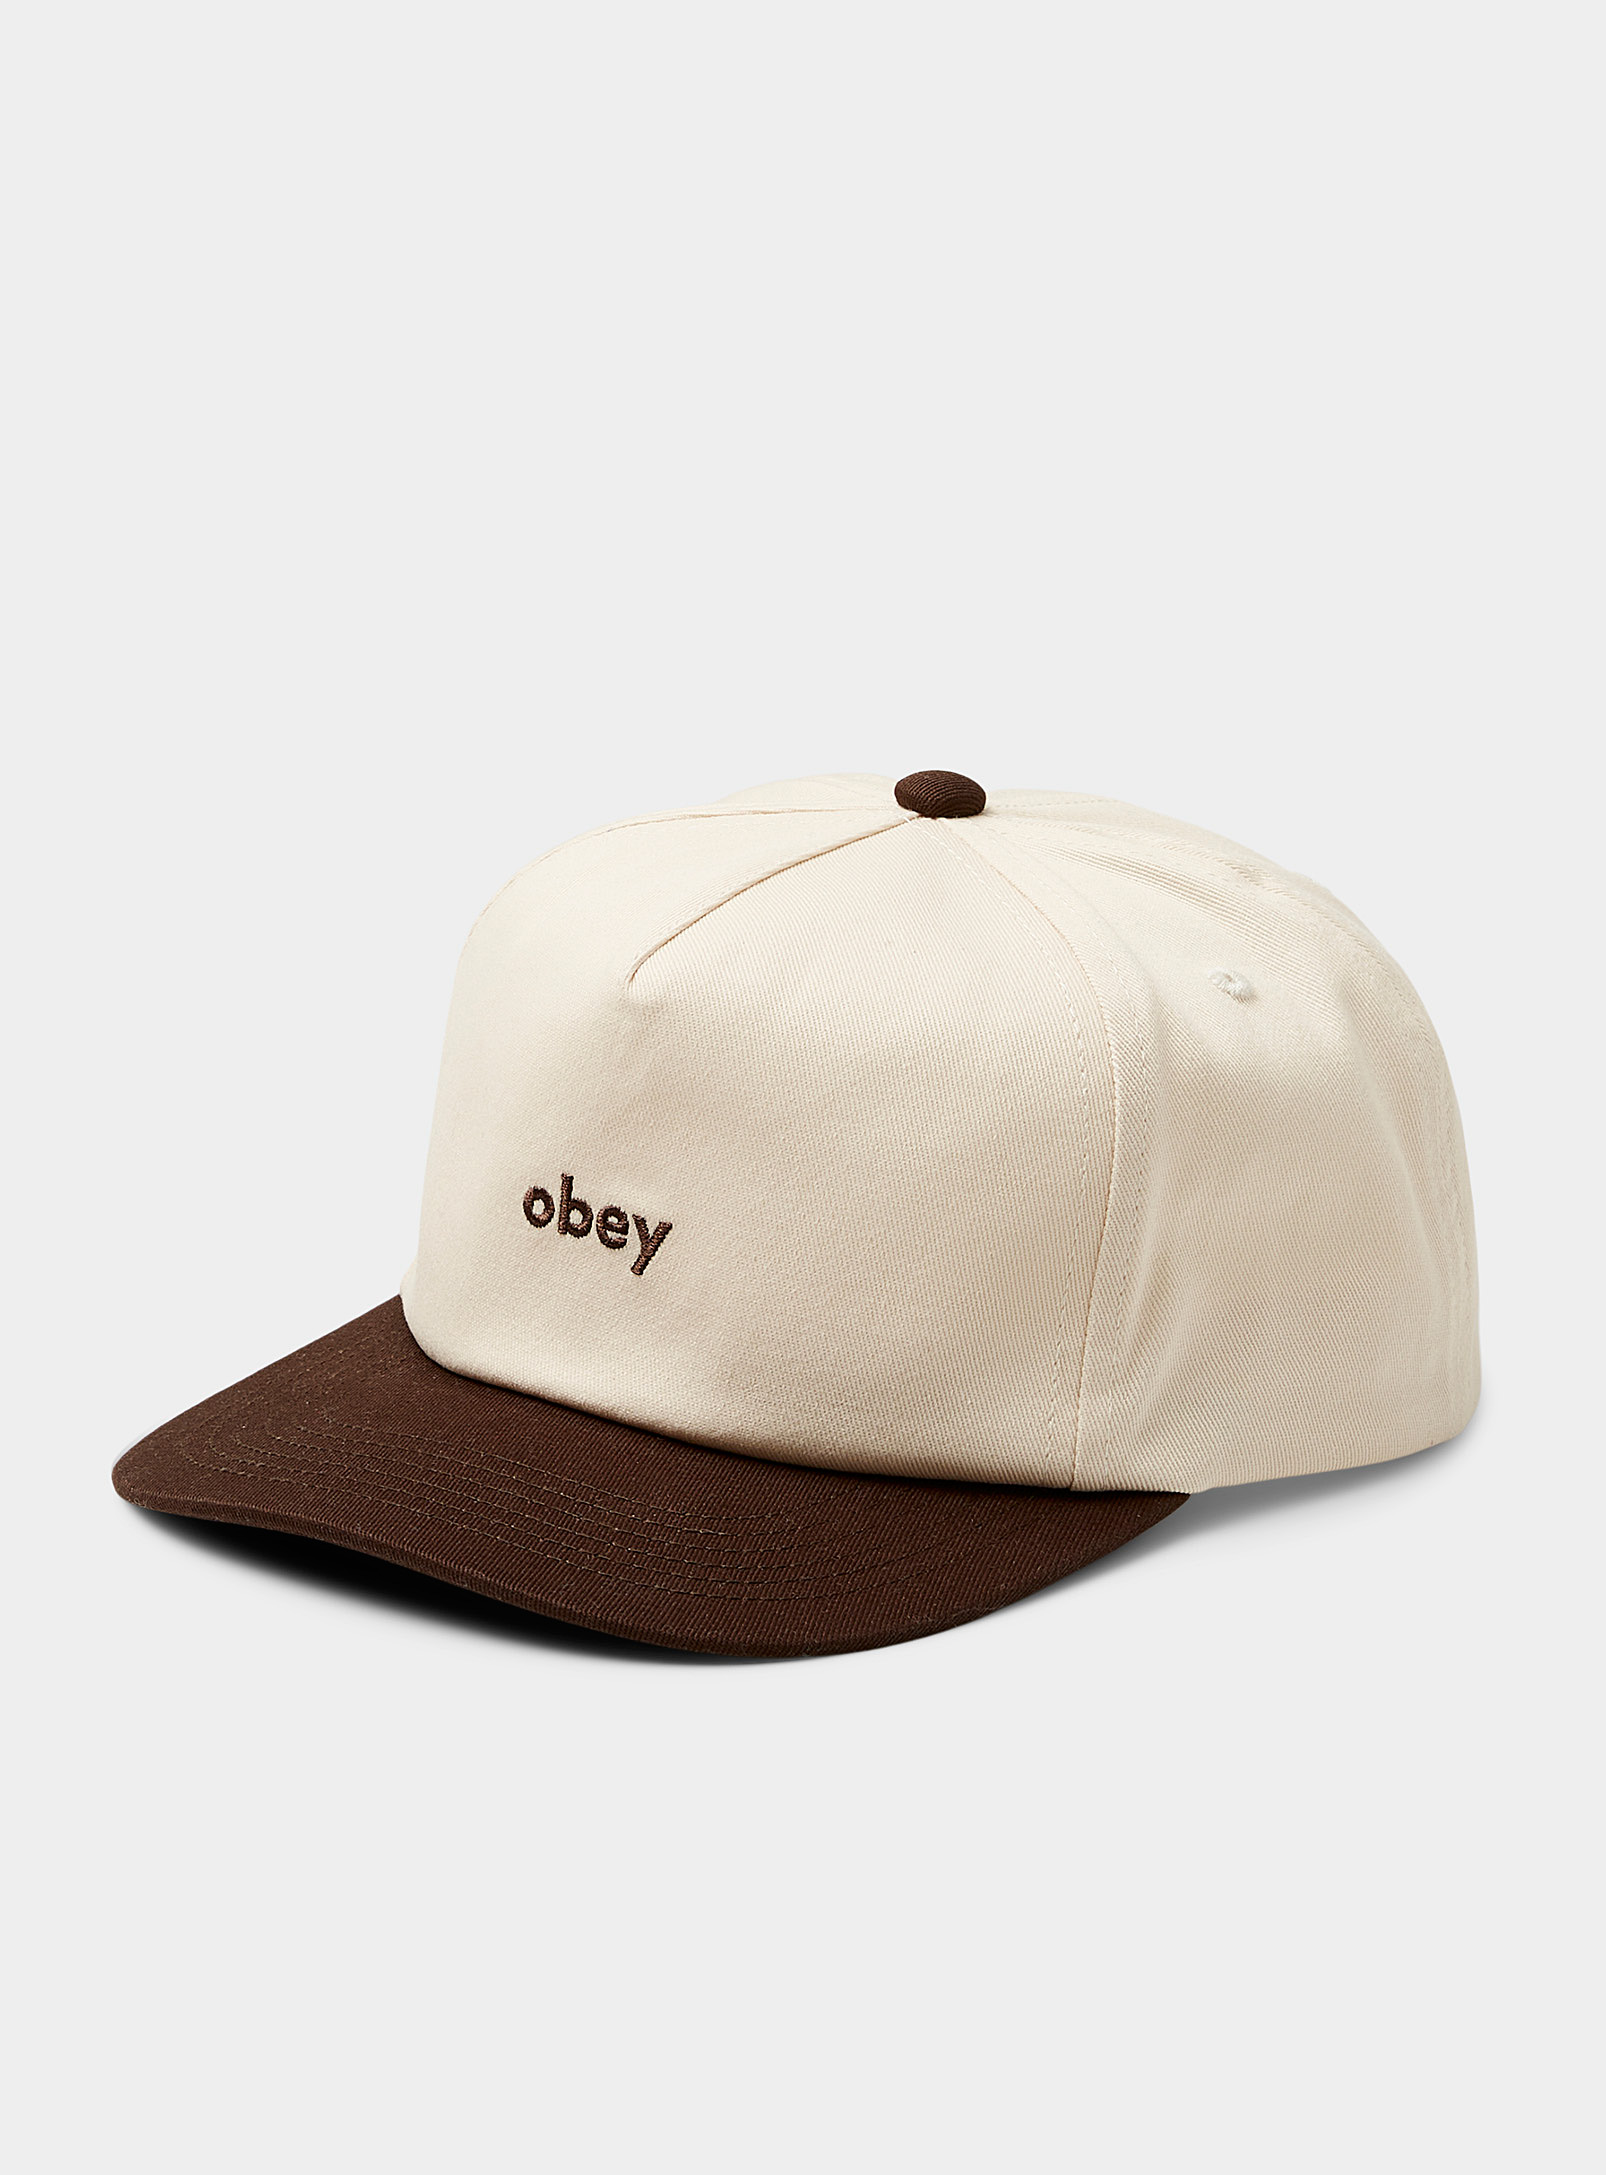 Obey - La casquette deux tons logo brodé